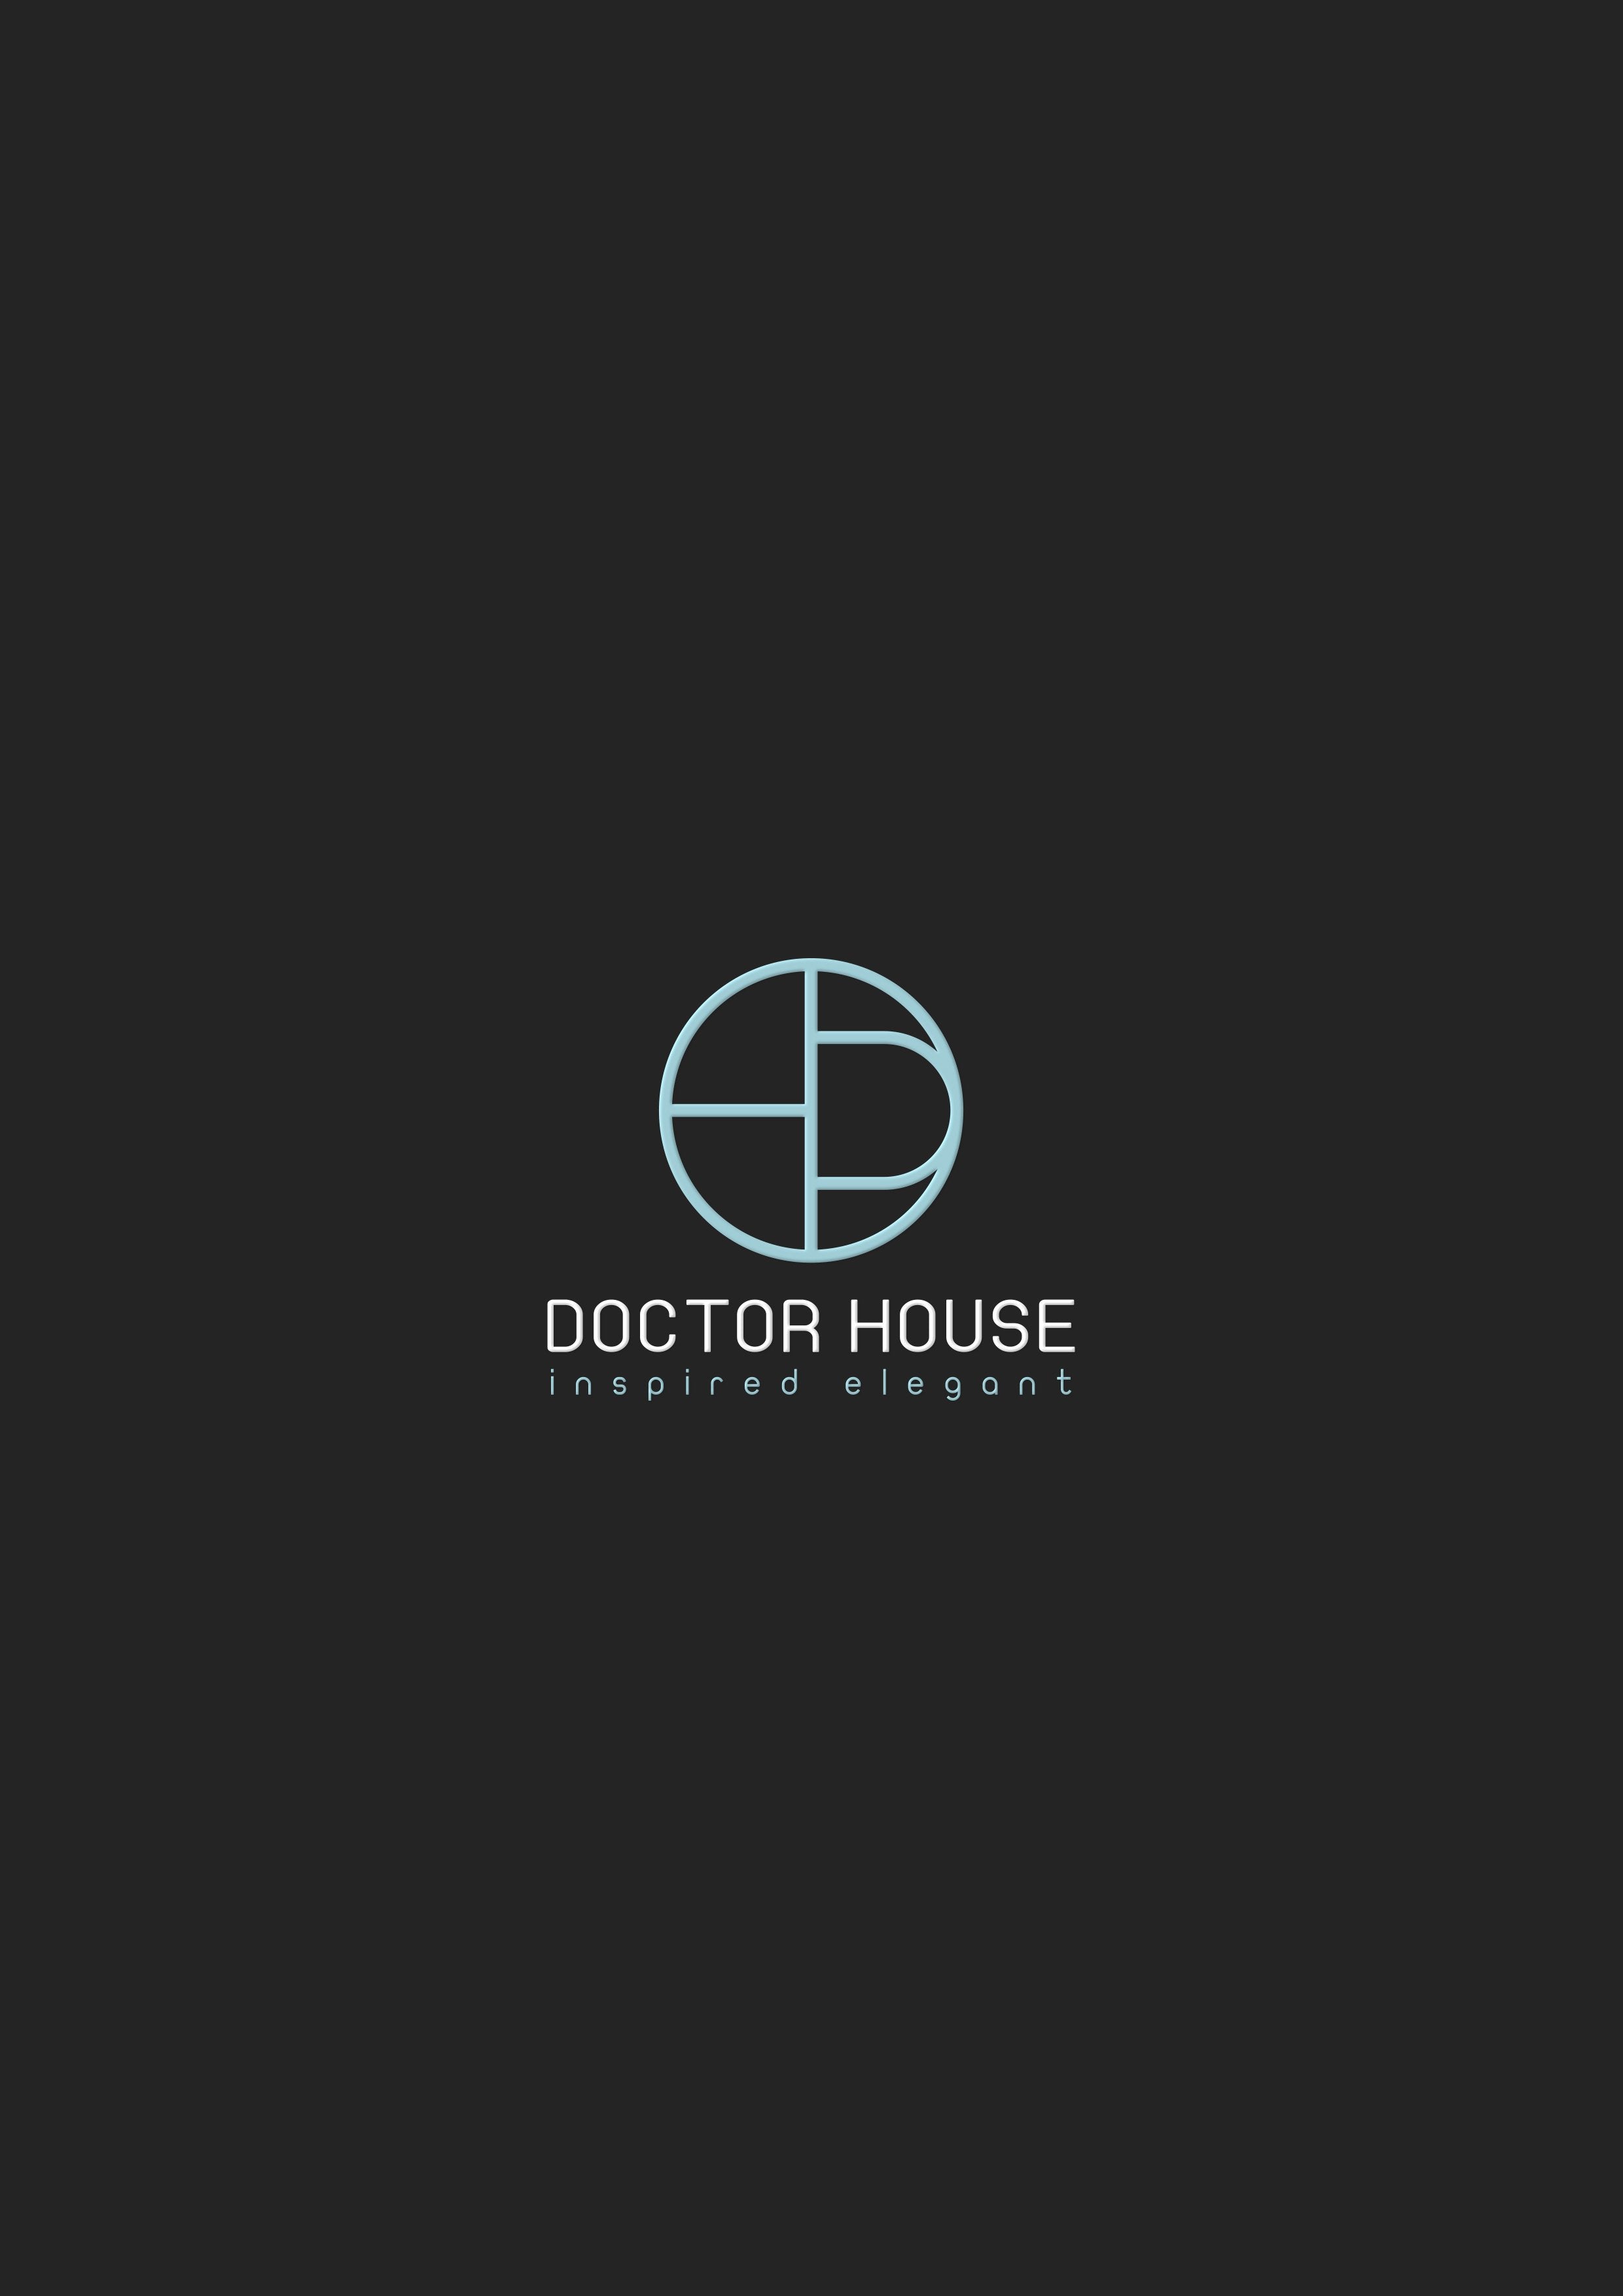 www.doctorhouseshop.com